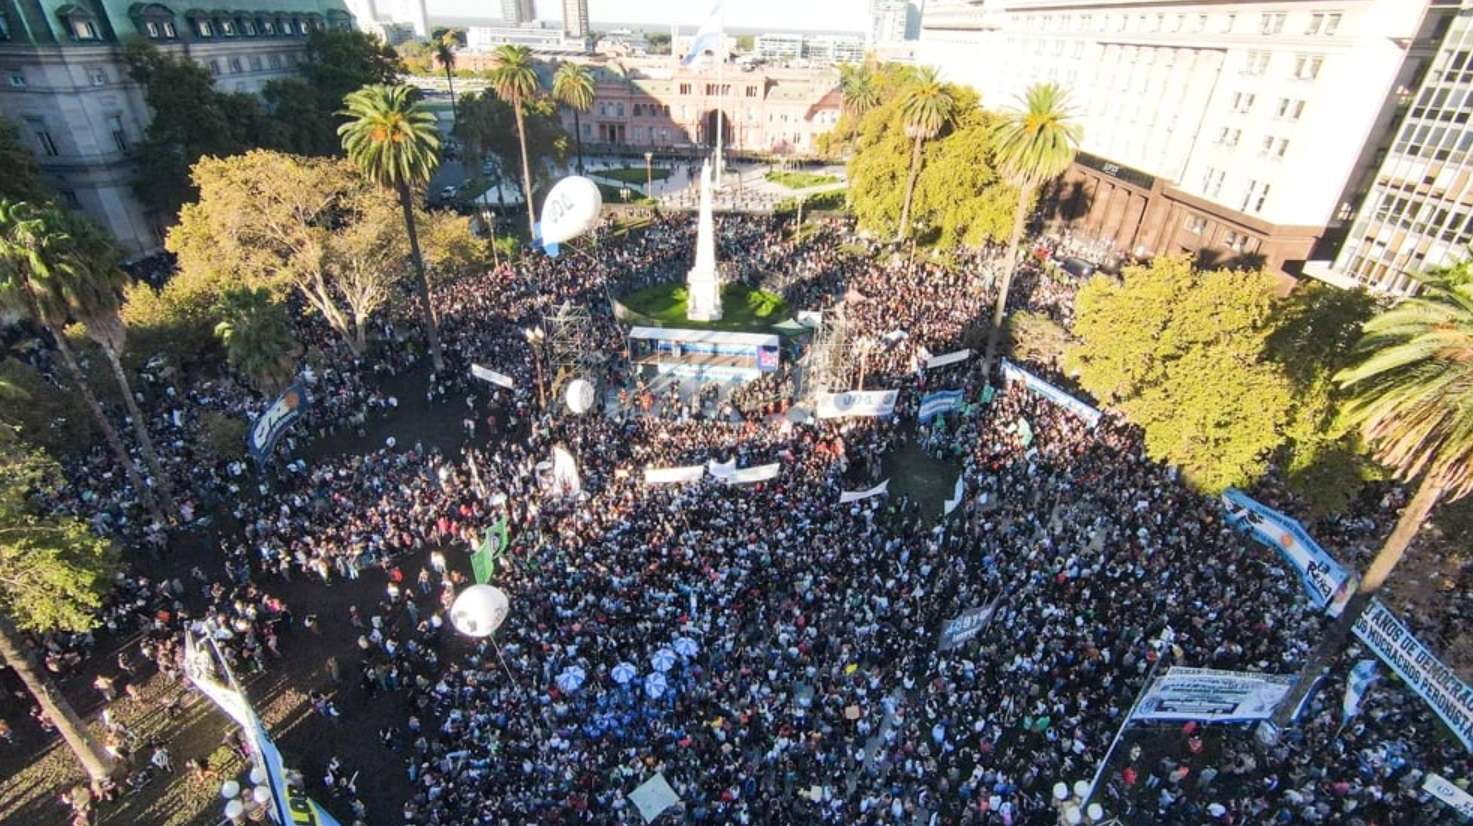 Universidad pública: Una multitud colmó la Plaza de Mayo y criticó el recorte presupuestario